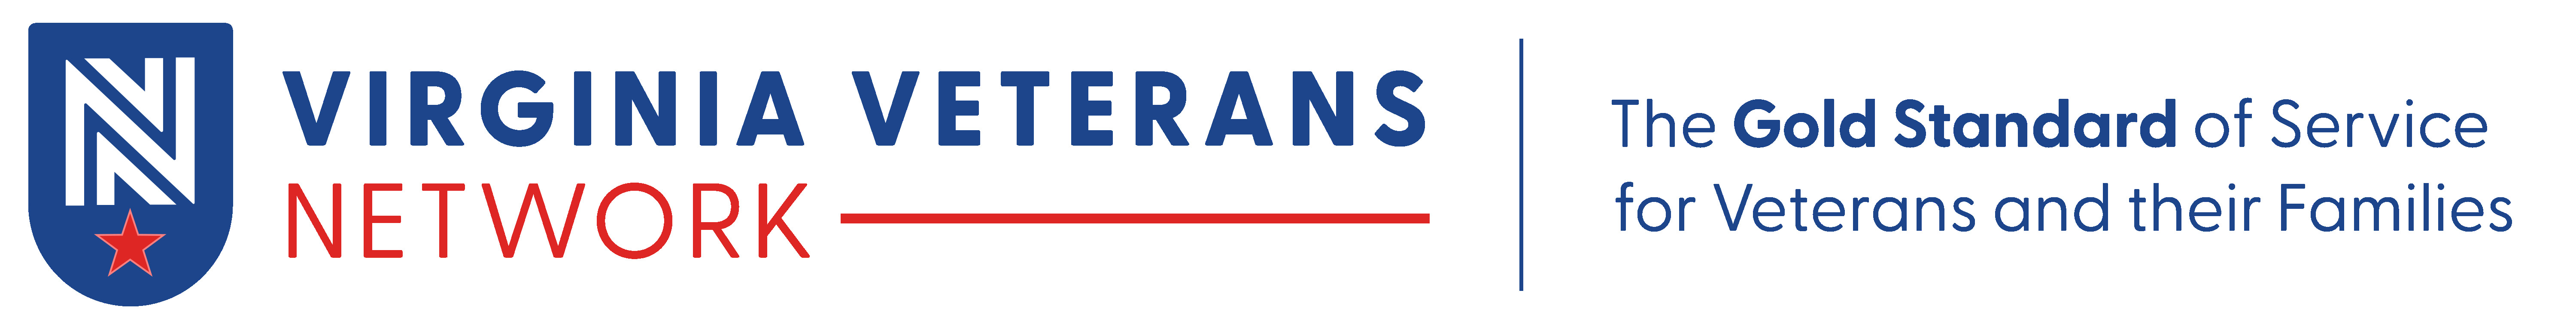 Virginia Veterans Network